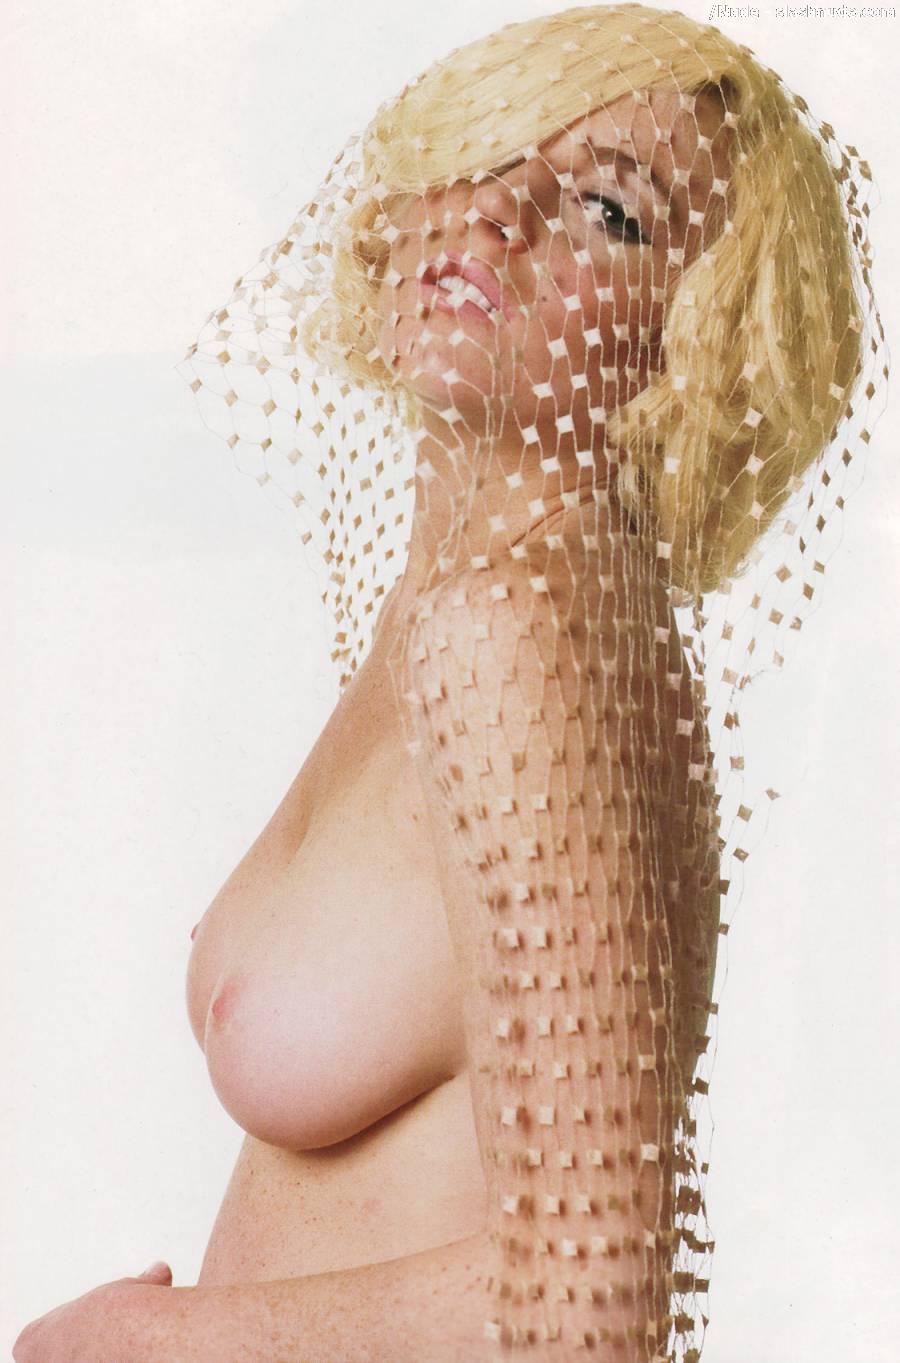 Lindsay Lohan Nude Pics